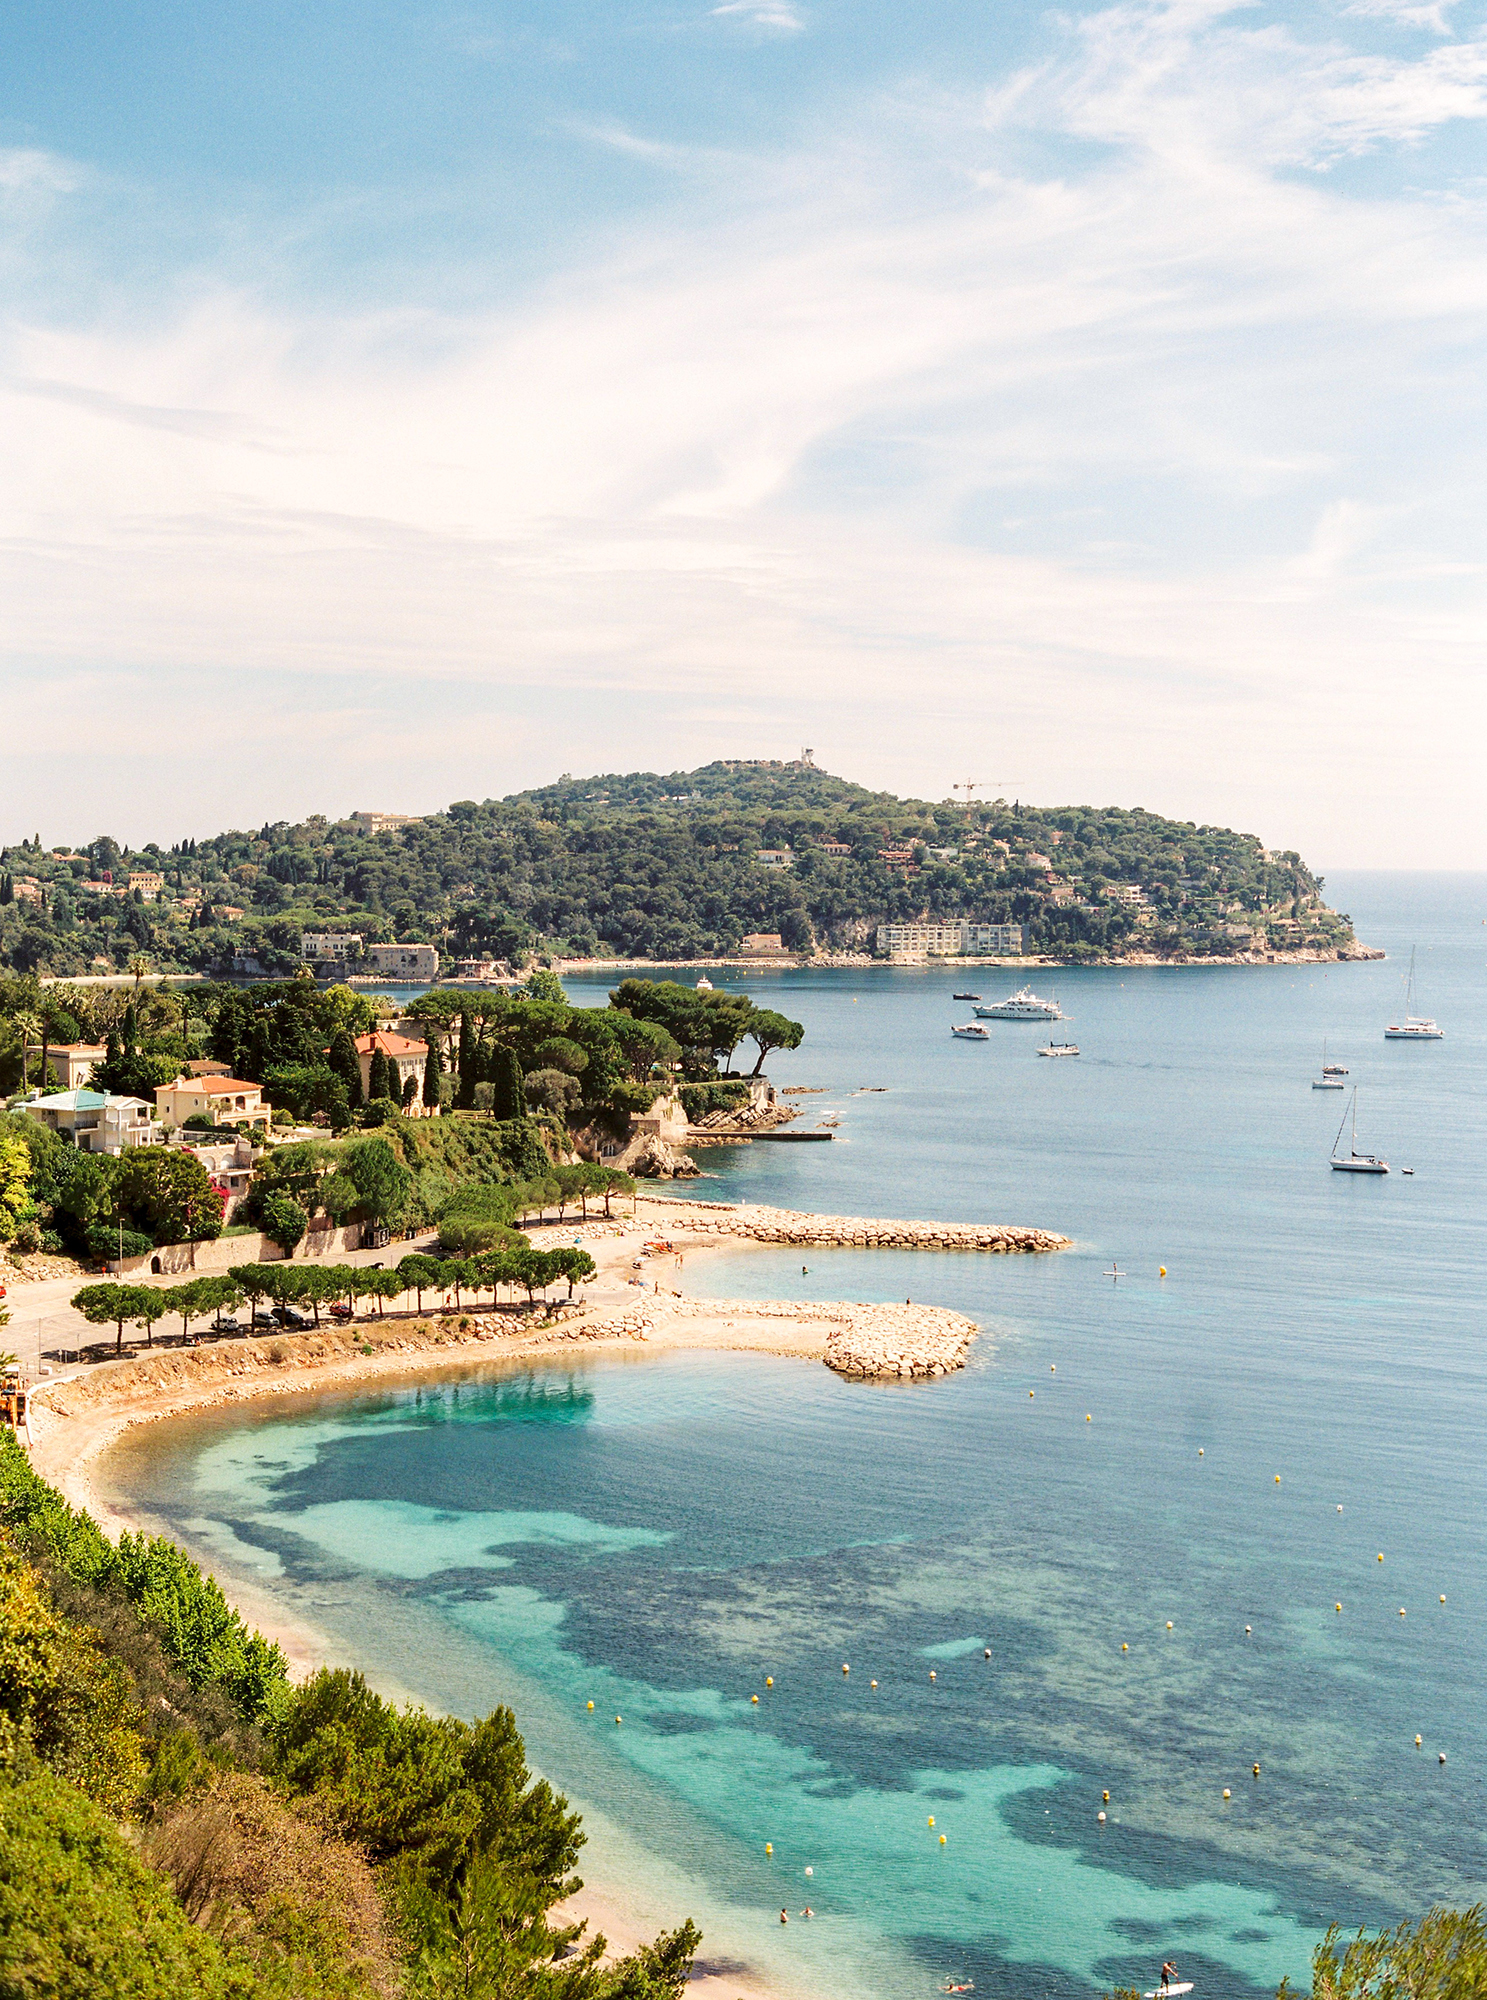 The astounding Côte D’Azur coastline